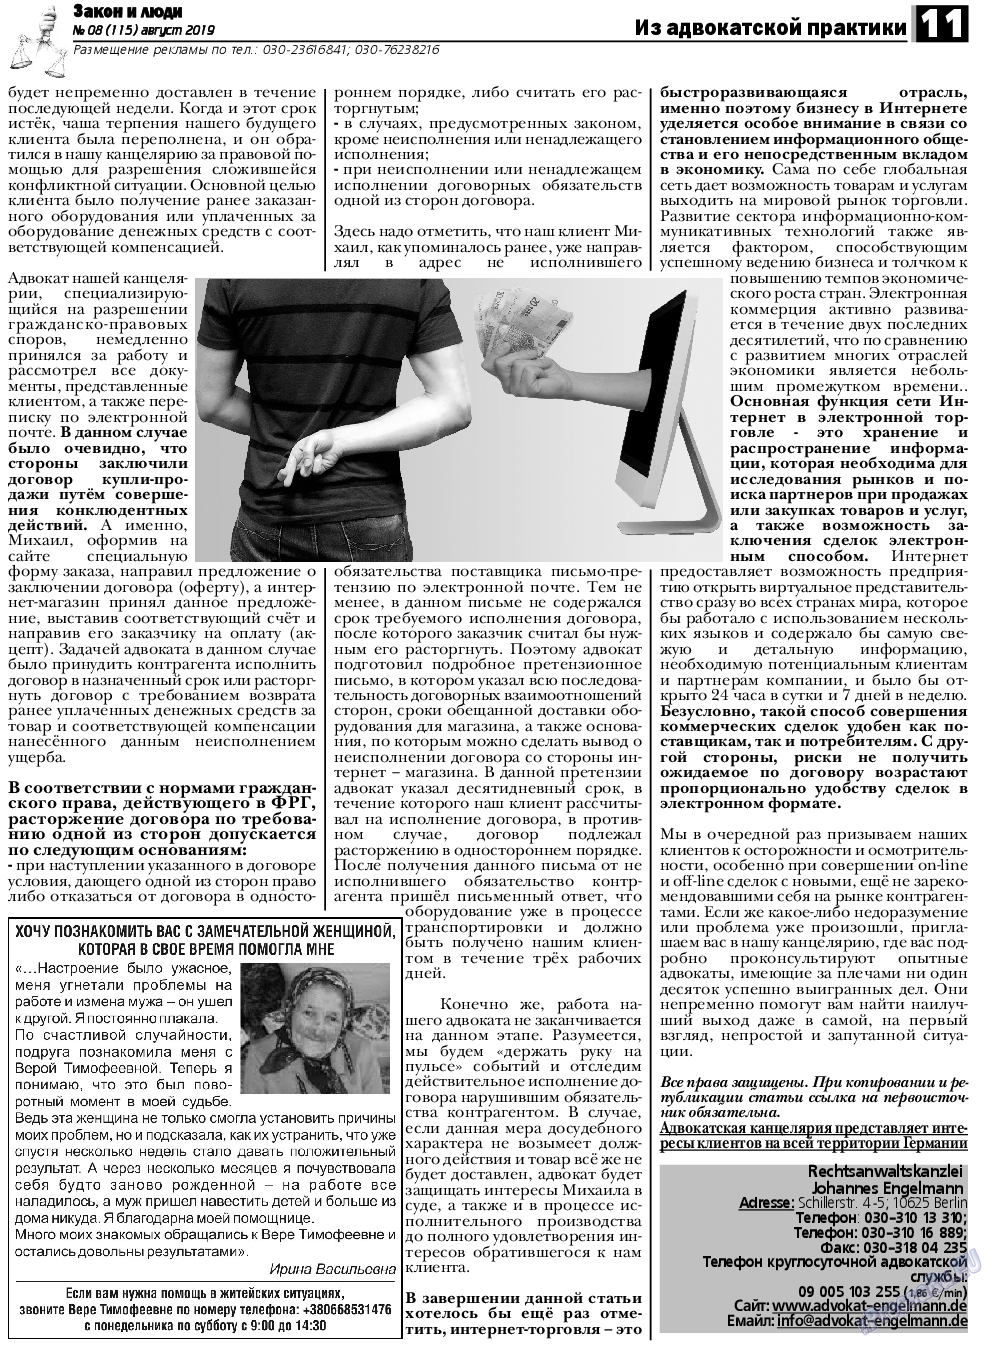 Закон и люди, газета. 2019 №8 стр.11